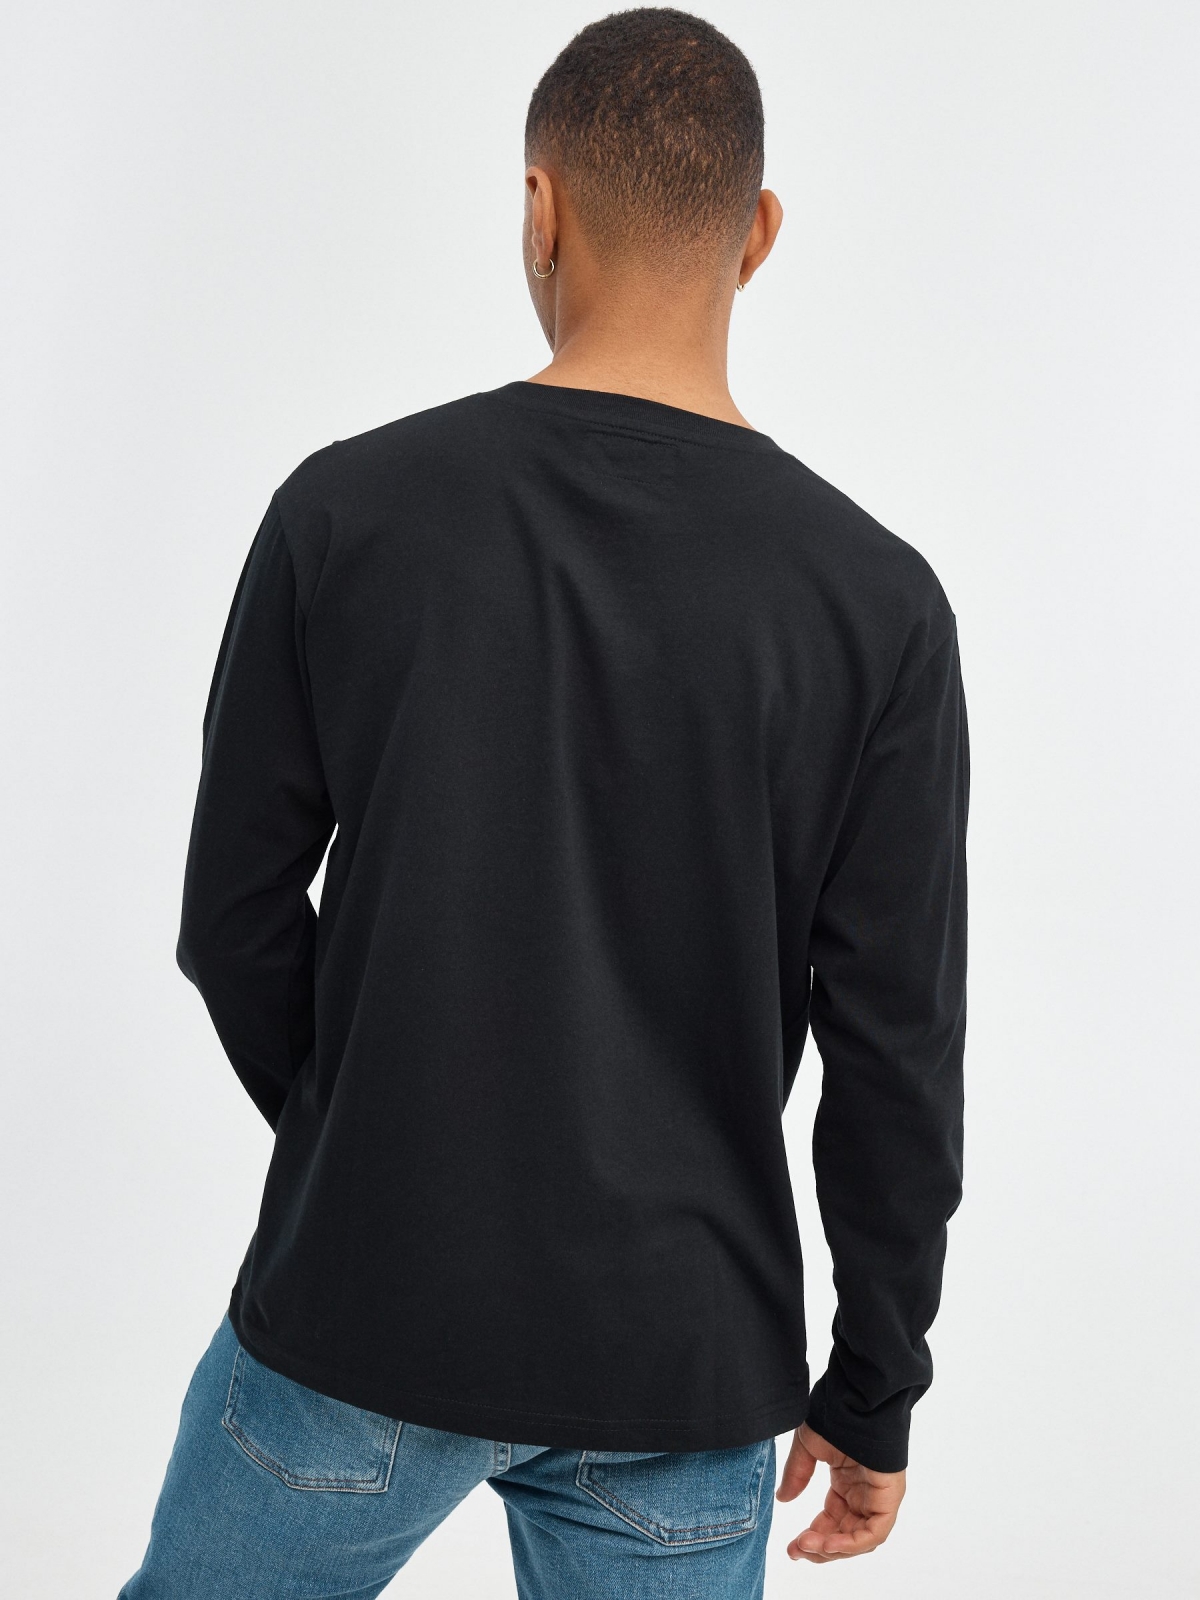 Camiseta regular INSIDE negro vista media trasera